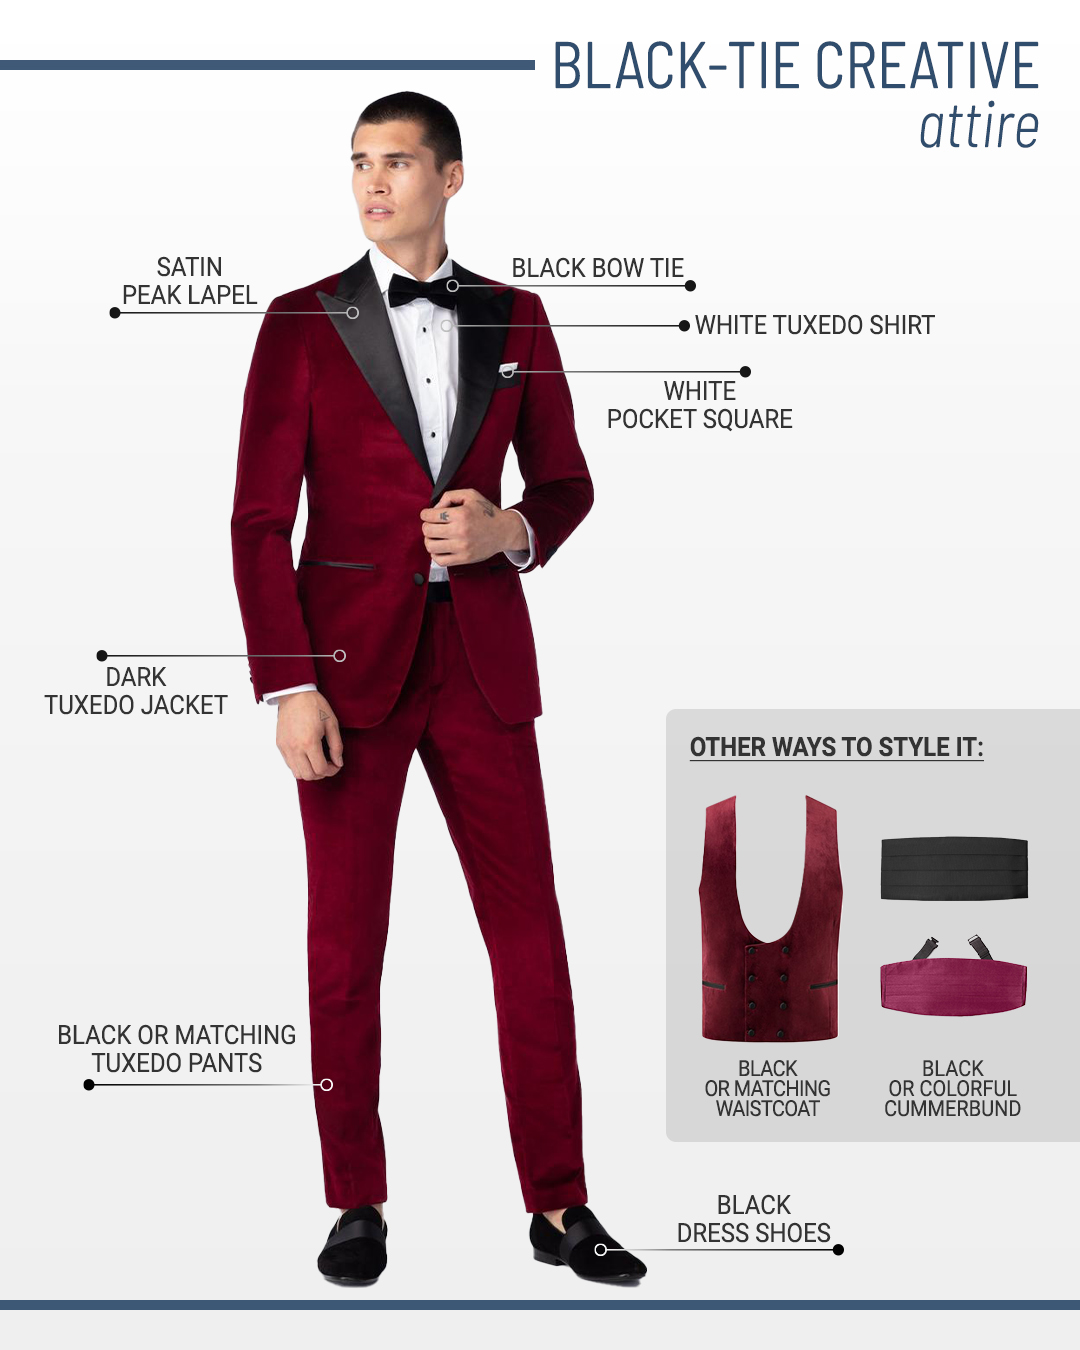 Black-tie creative dress code and attire for men